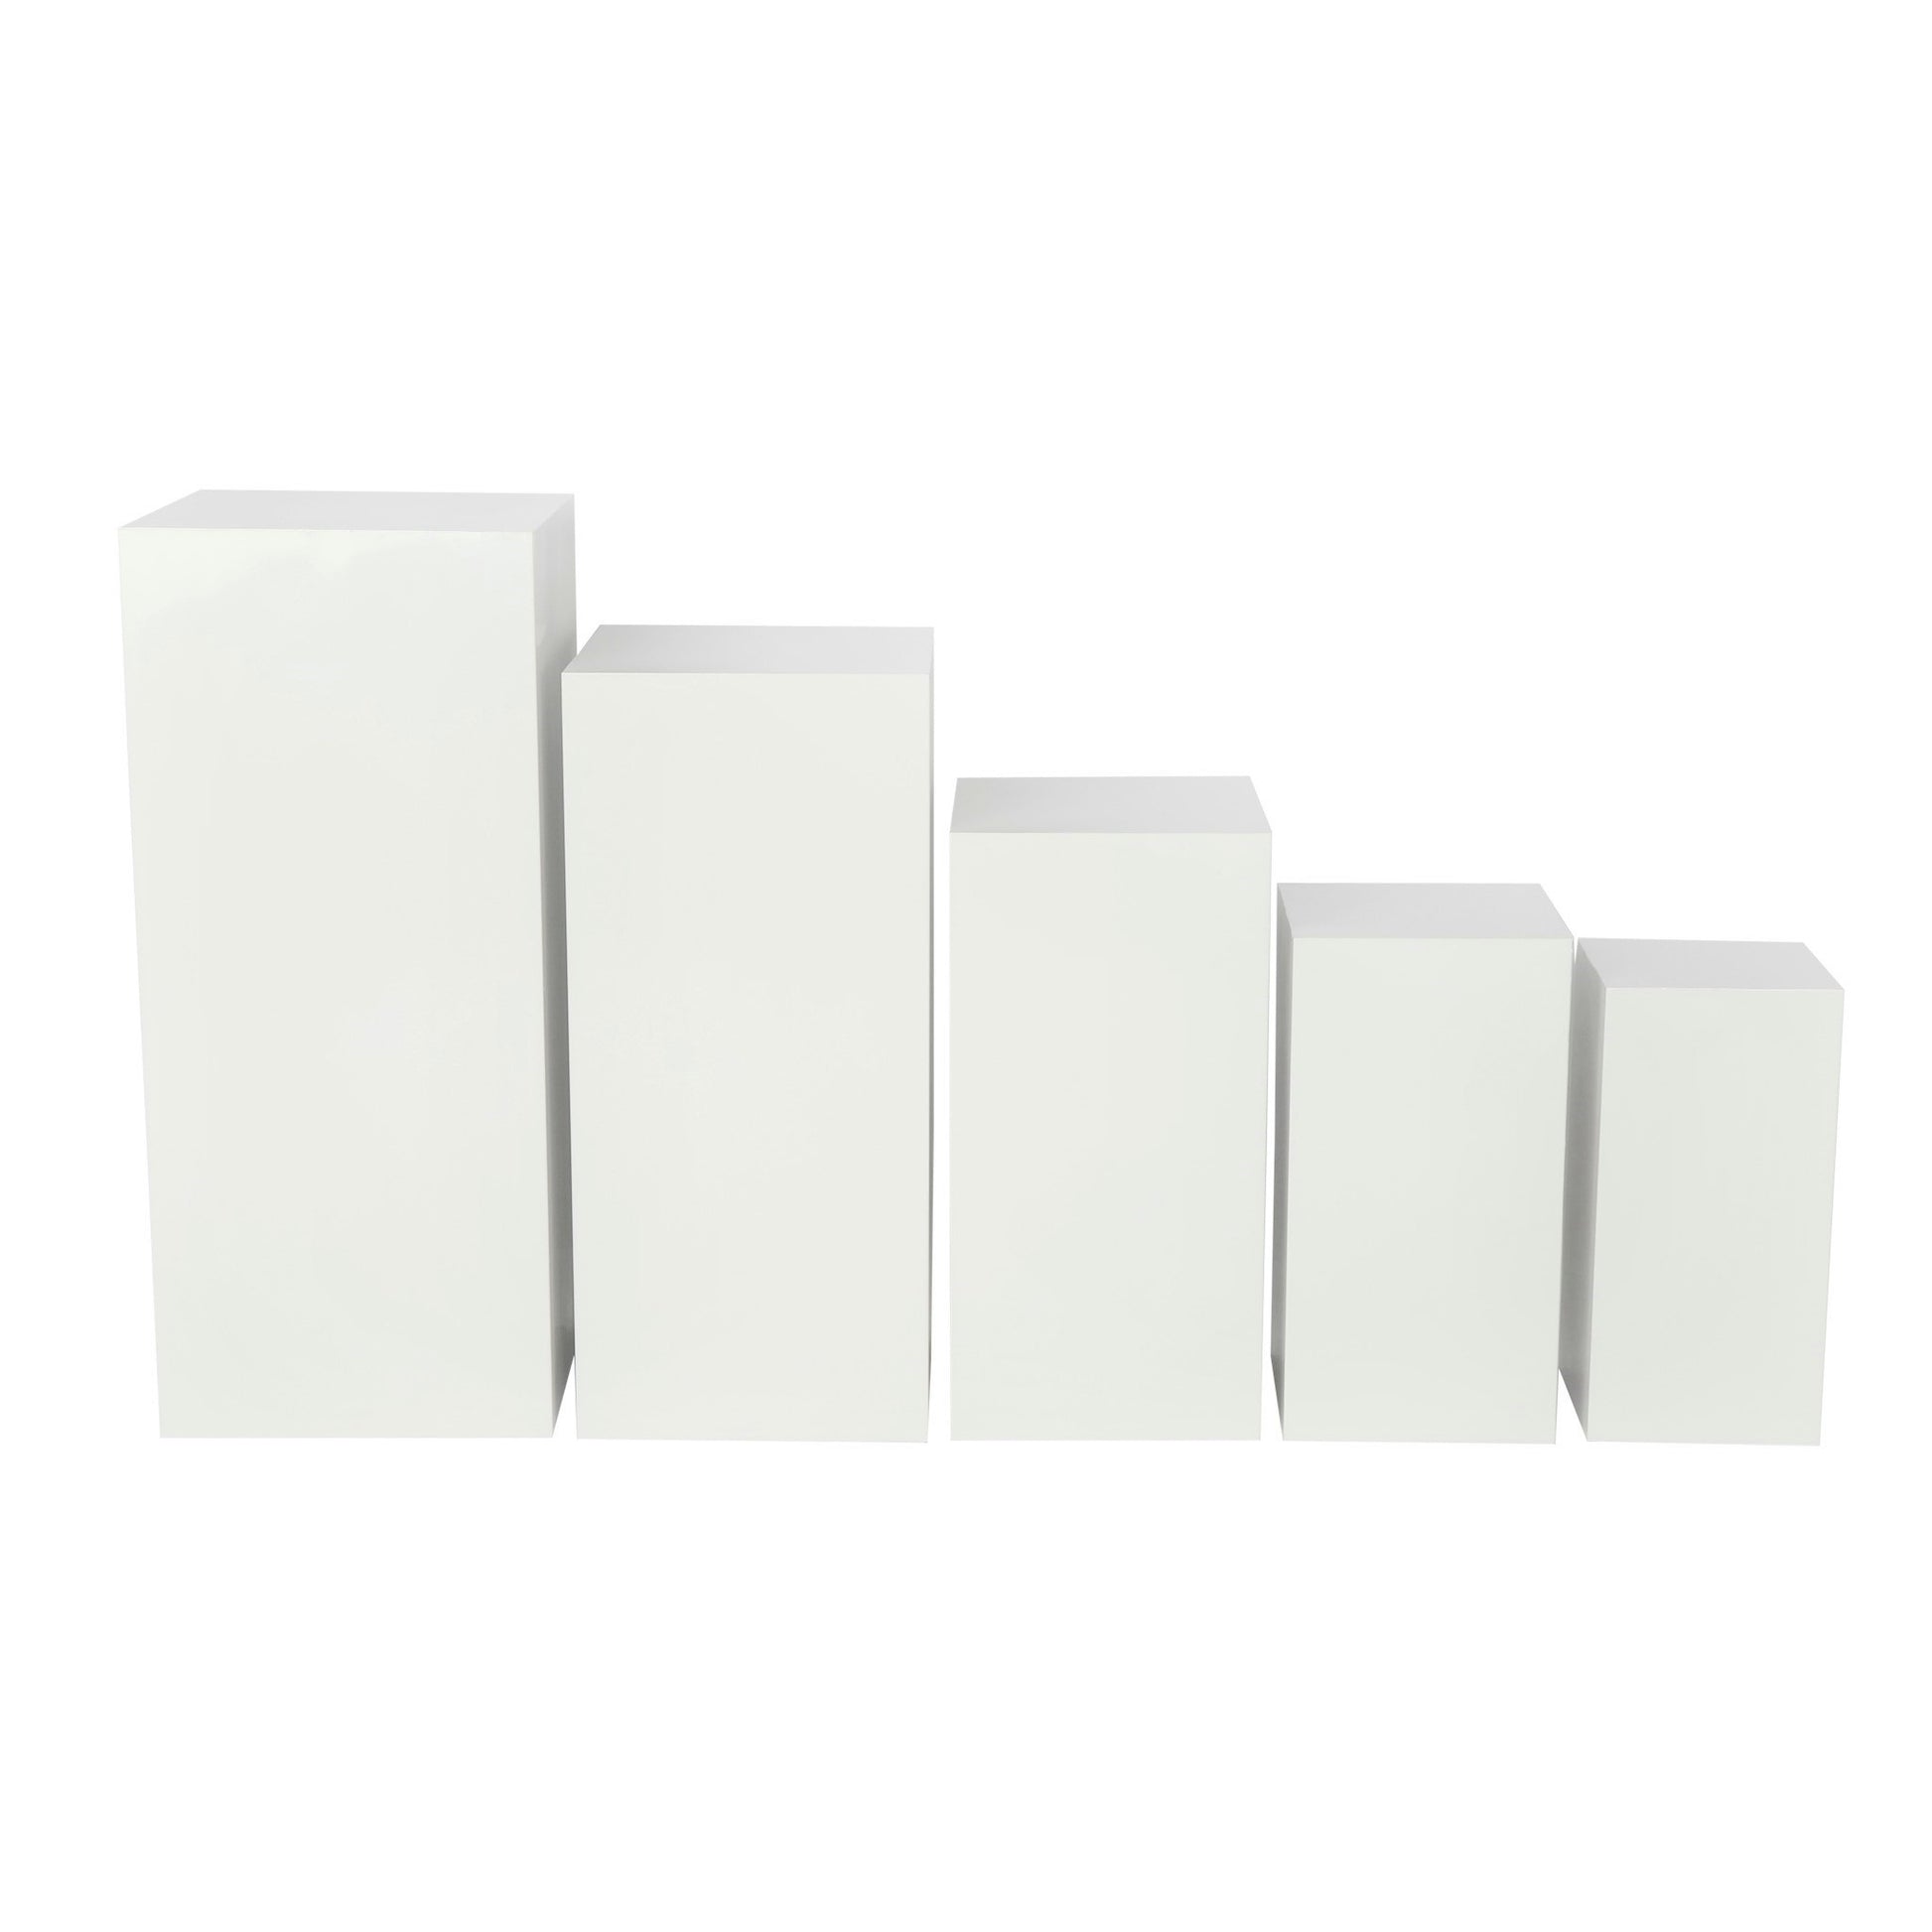 Square Metal Pillar Pedestal Display Stands 5 pcs/set - White